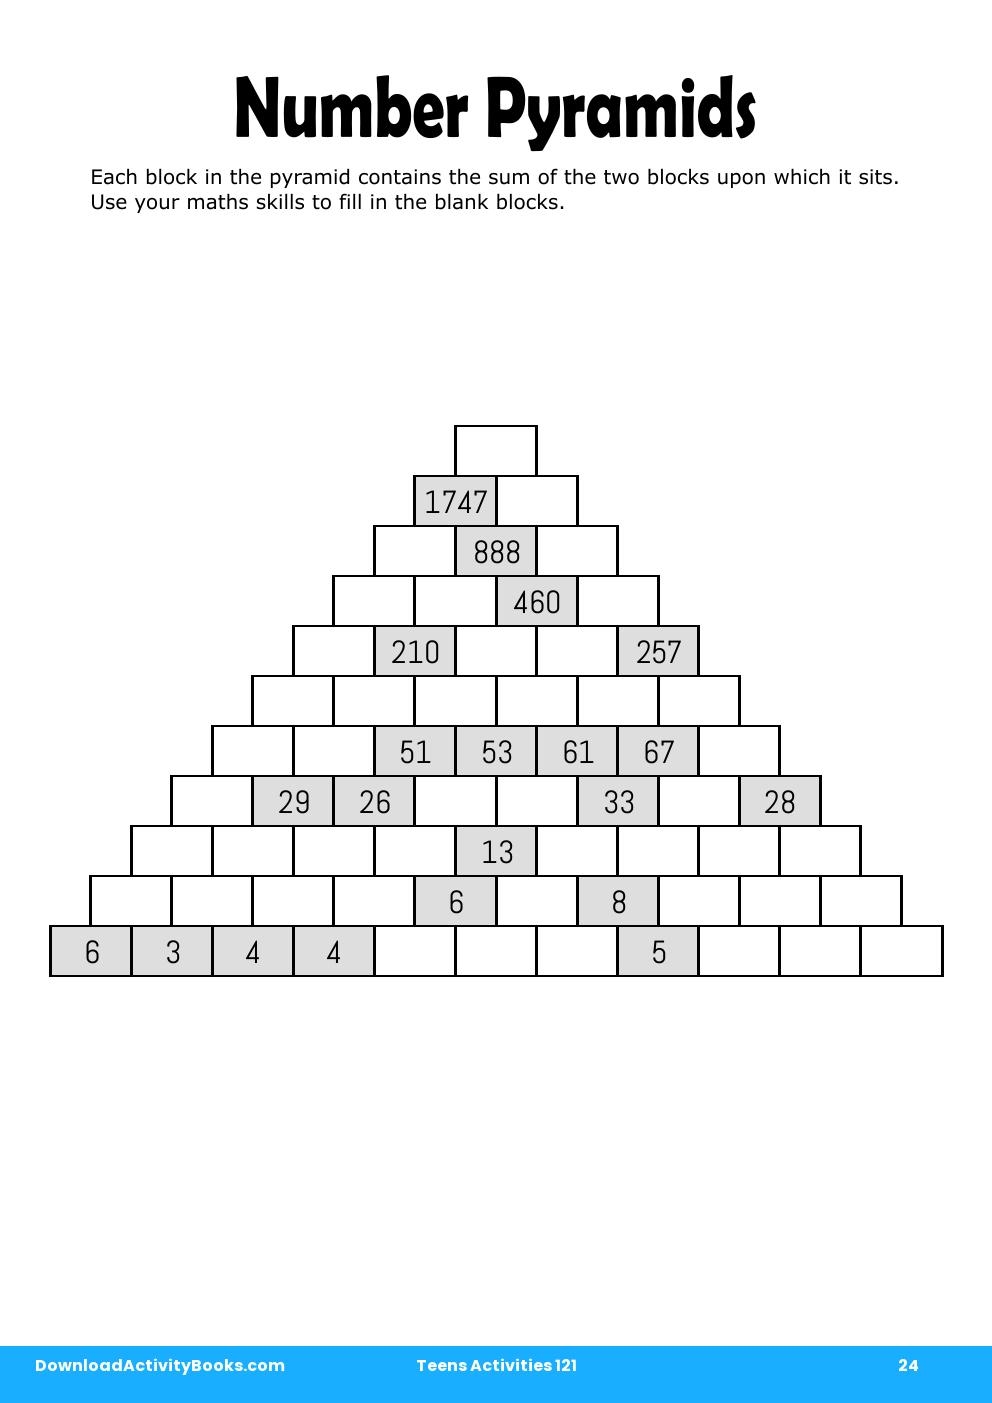 Number Pyramids in Teens Activities 121